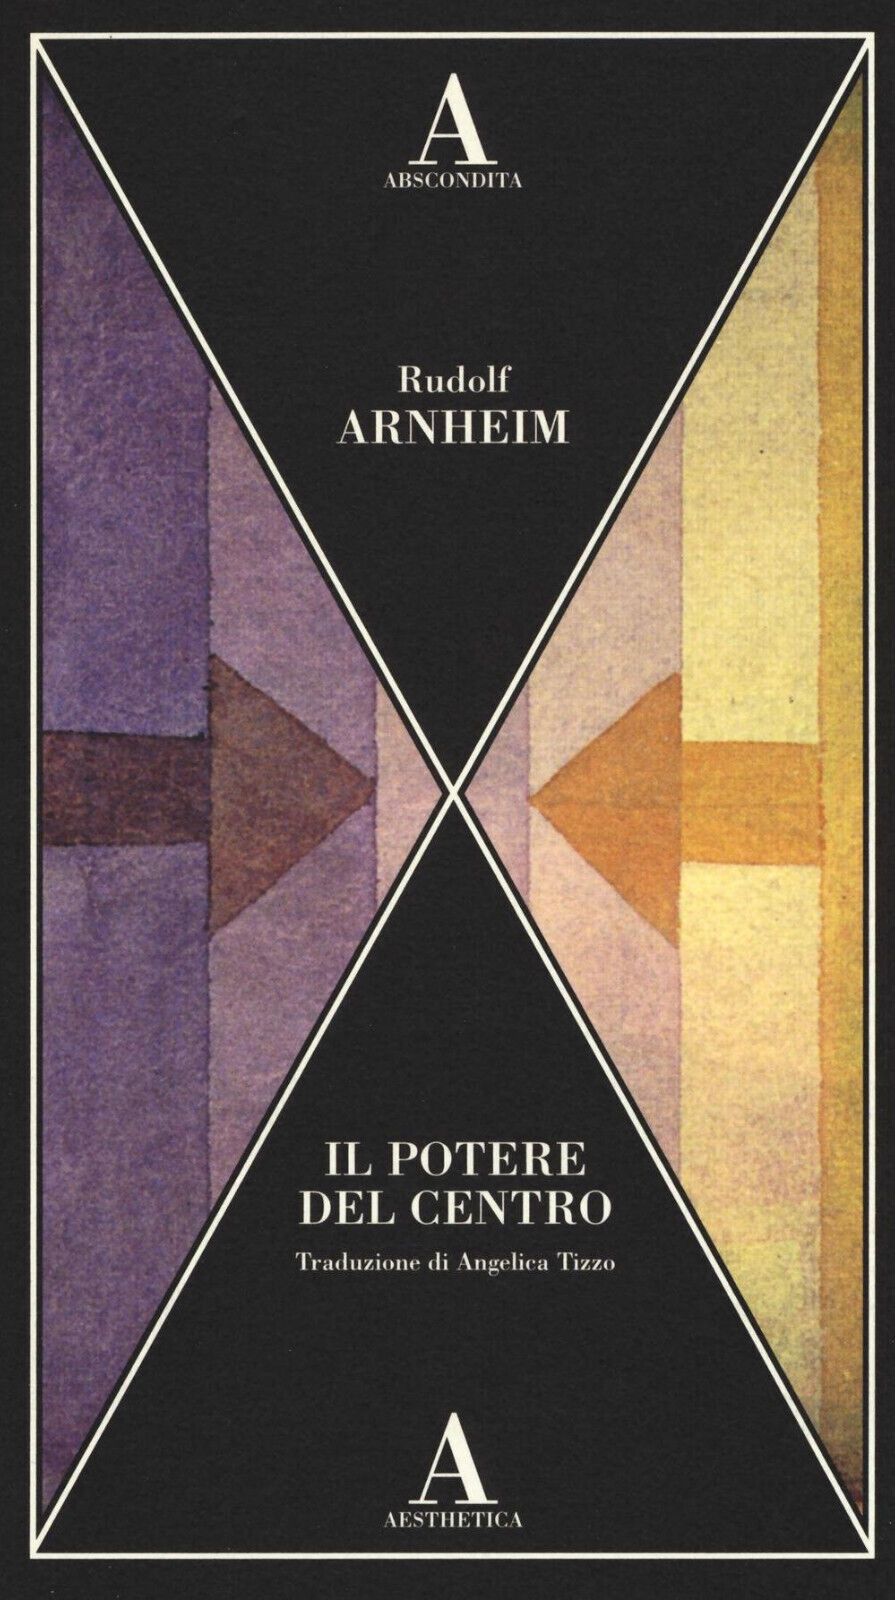 Il potere del centro - Rudolf Arnheim - Abscondita, 2016 libro usato